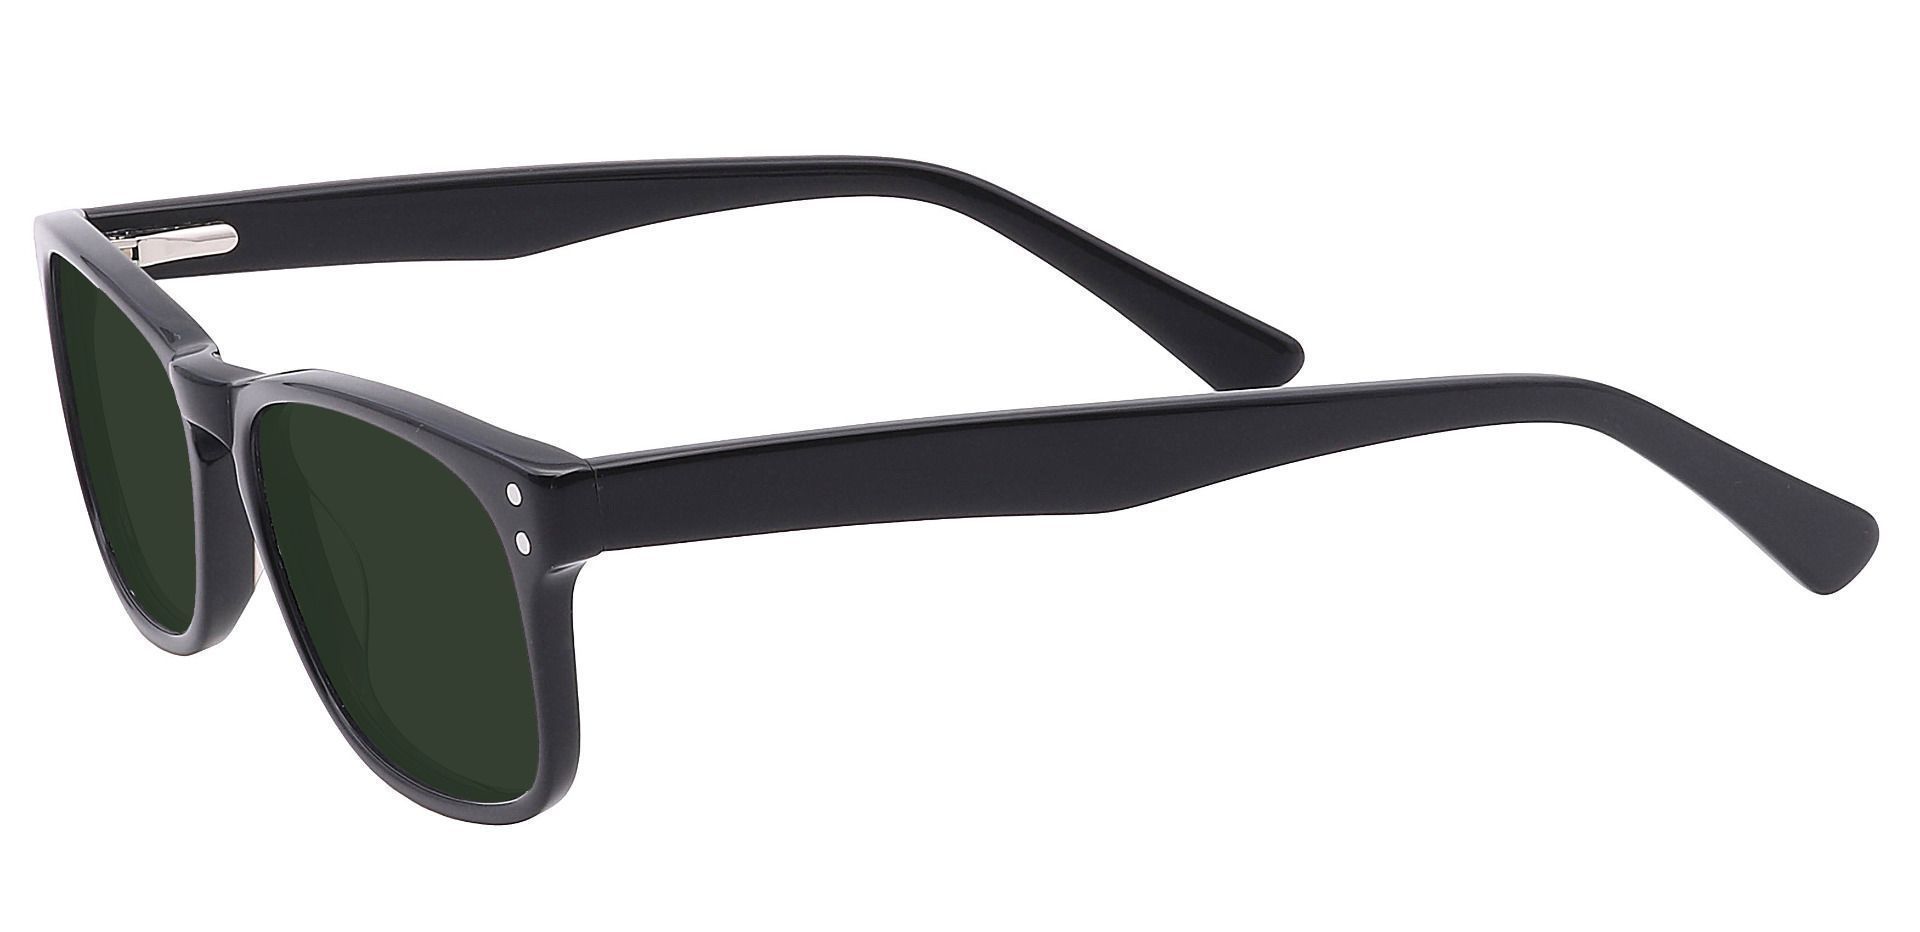 Morris Rectangle Reading Sunglasses - Black Frame With Green Lenses